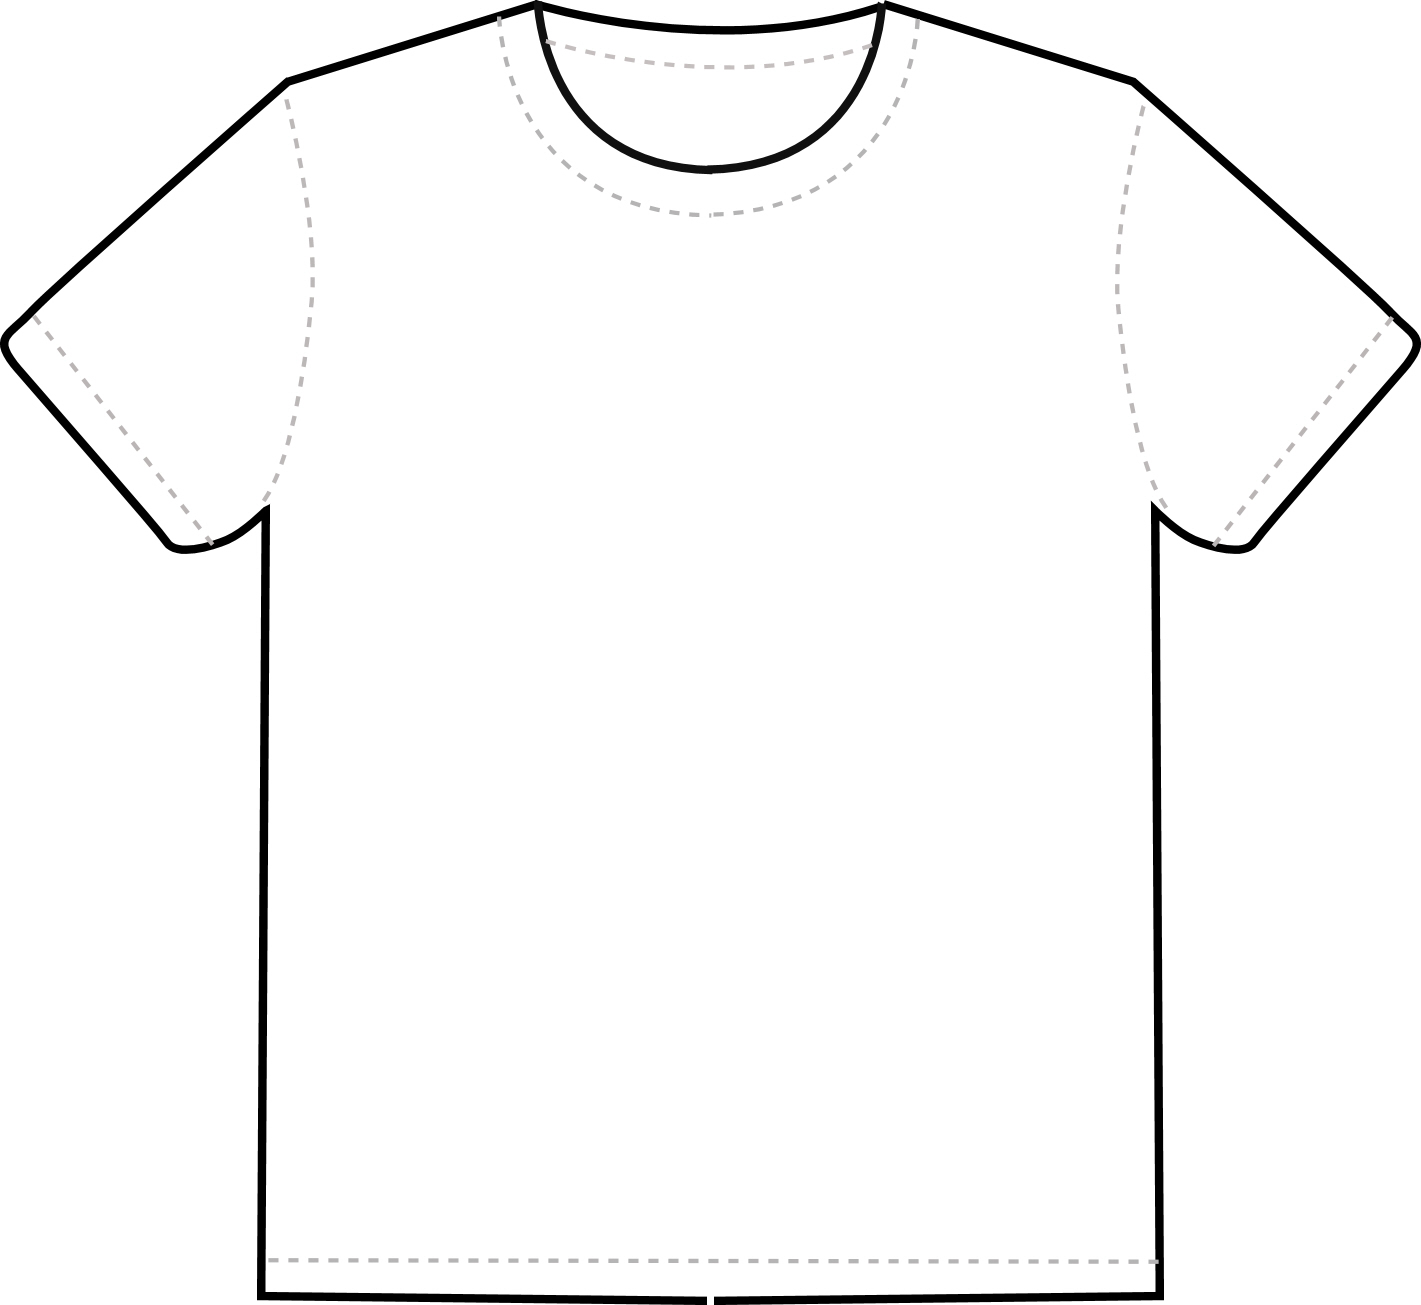 T-shirt Design Template - ClipArt Best